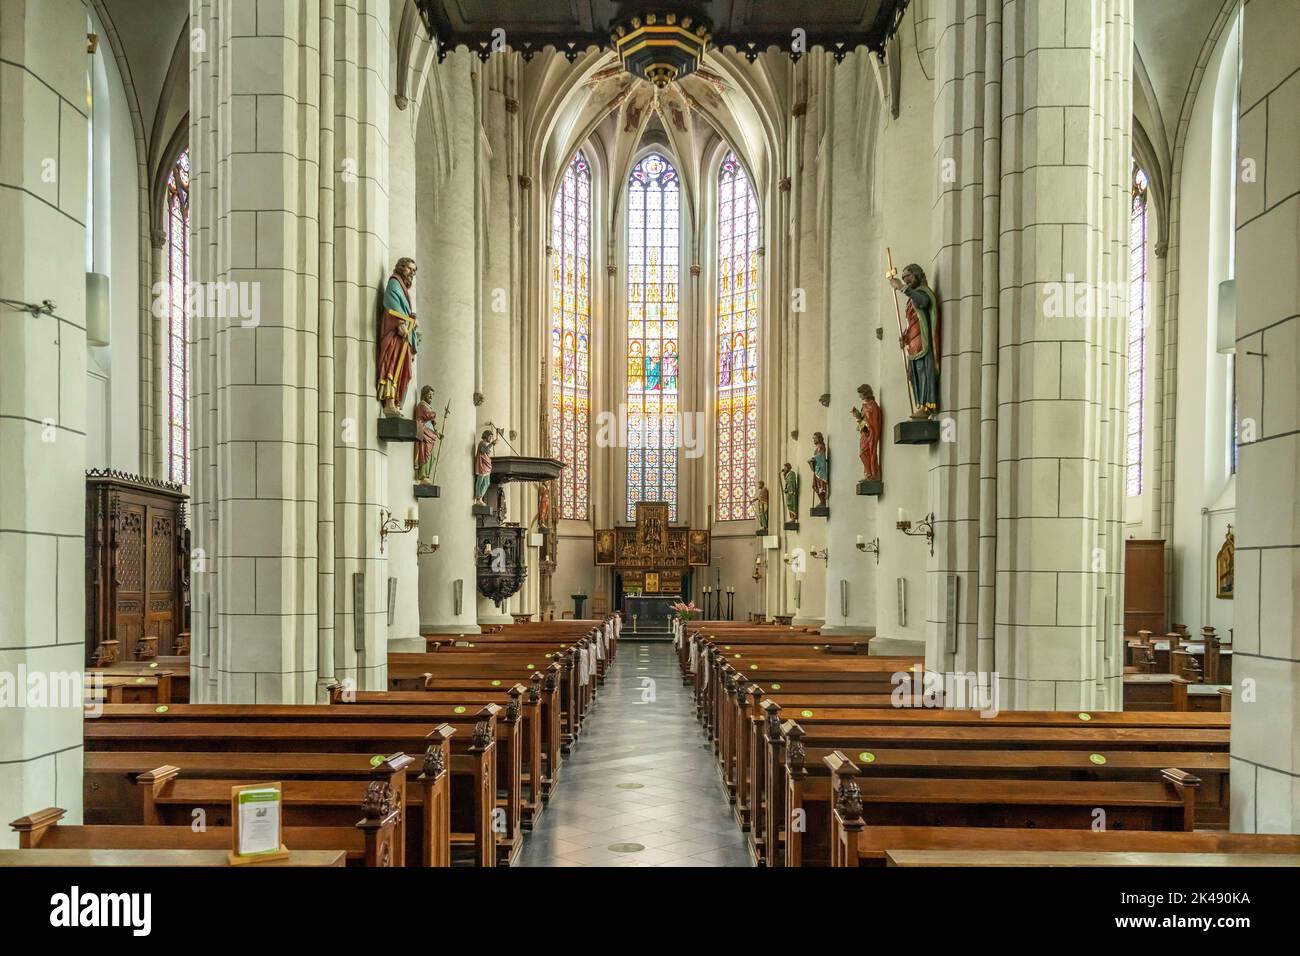 Innenraum der katholischen Pfarrkirche San Pedro y Pablo en Straelen, Nordrhein-Westfalen, Deutschland, Europa | Iglesia de San Pedro y Pablo interi Foto de stock